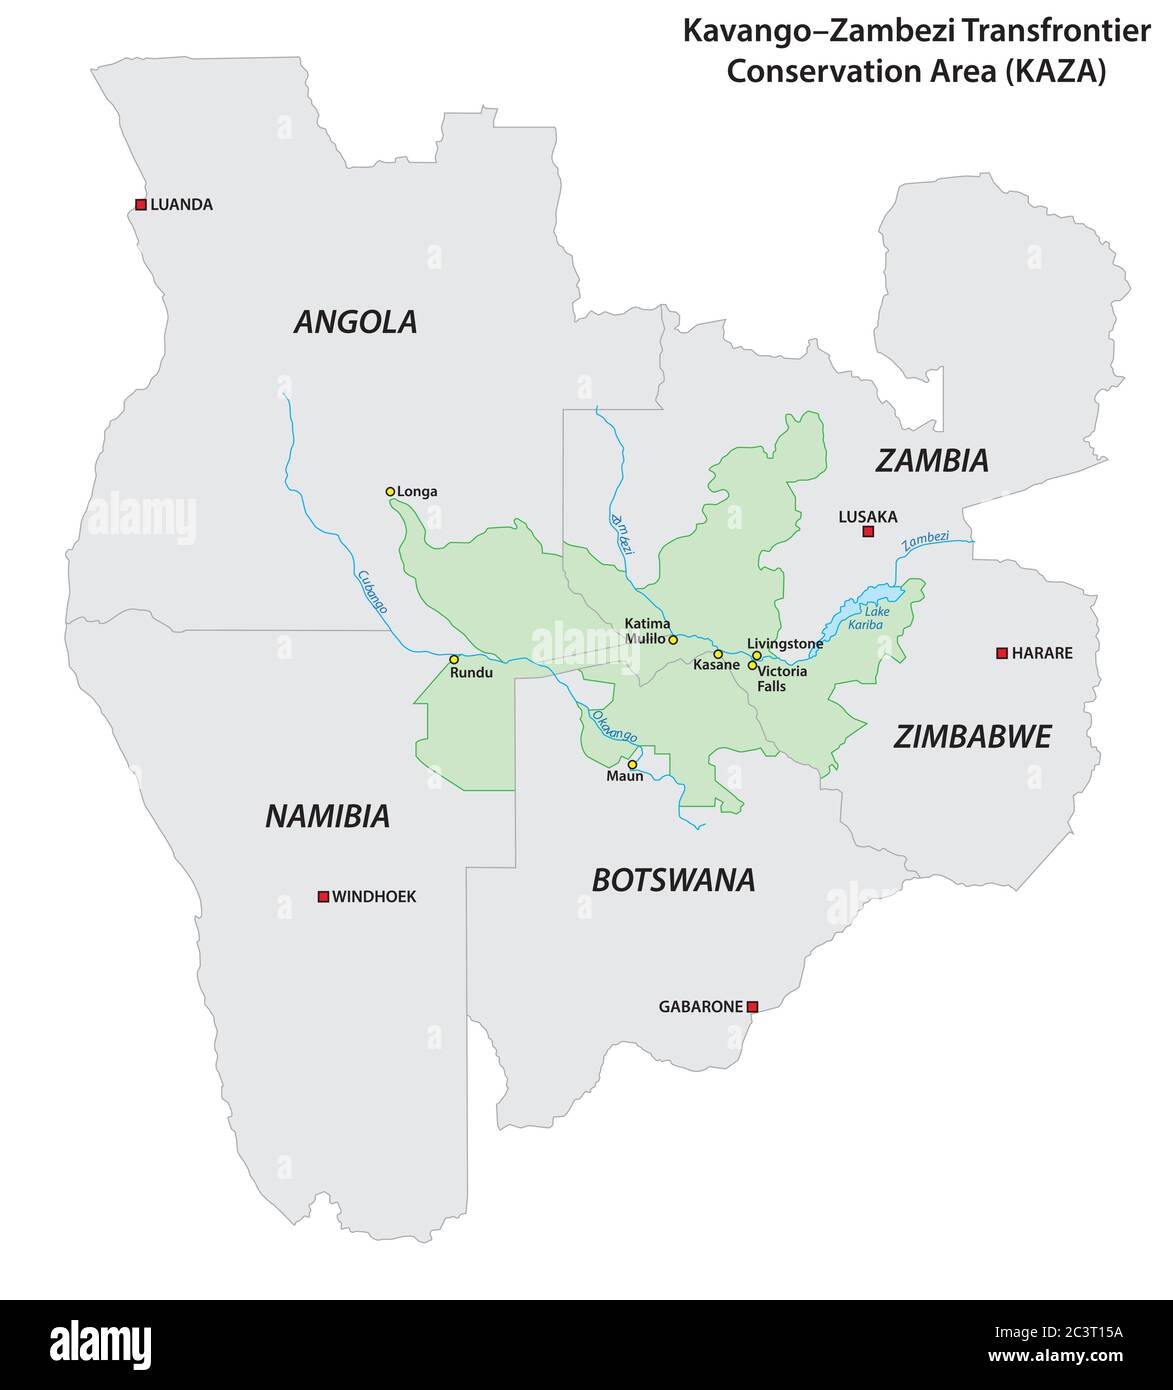 Carte vectorielle de la zone de conservation transfrontalière Kavango-Zambezi (KAZA) en Afrique australe Illustration de Vecteur